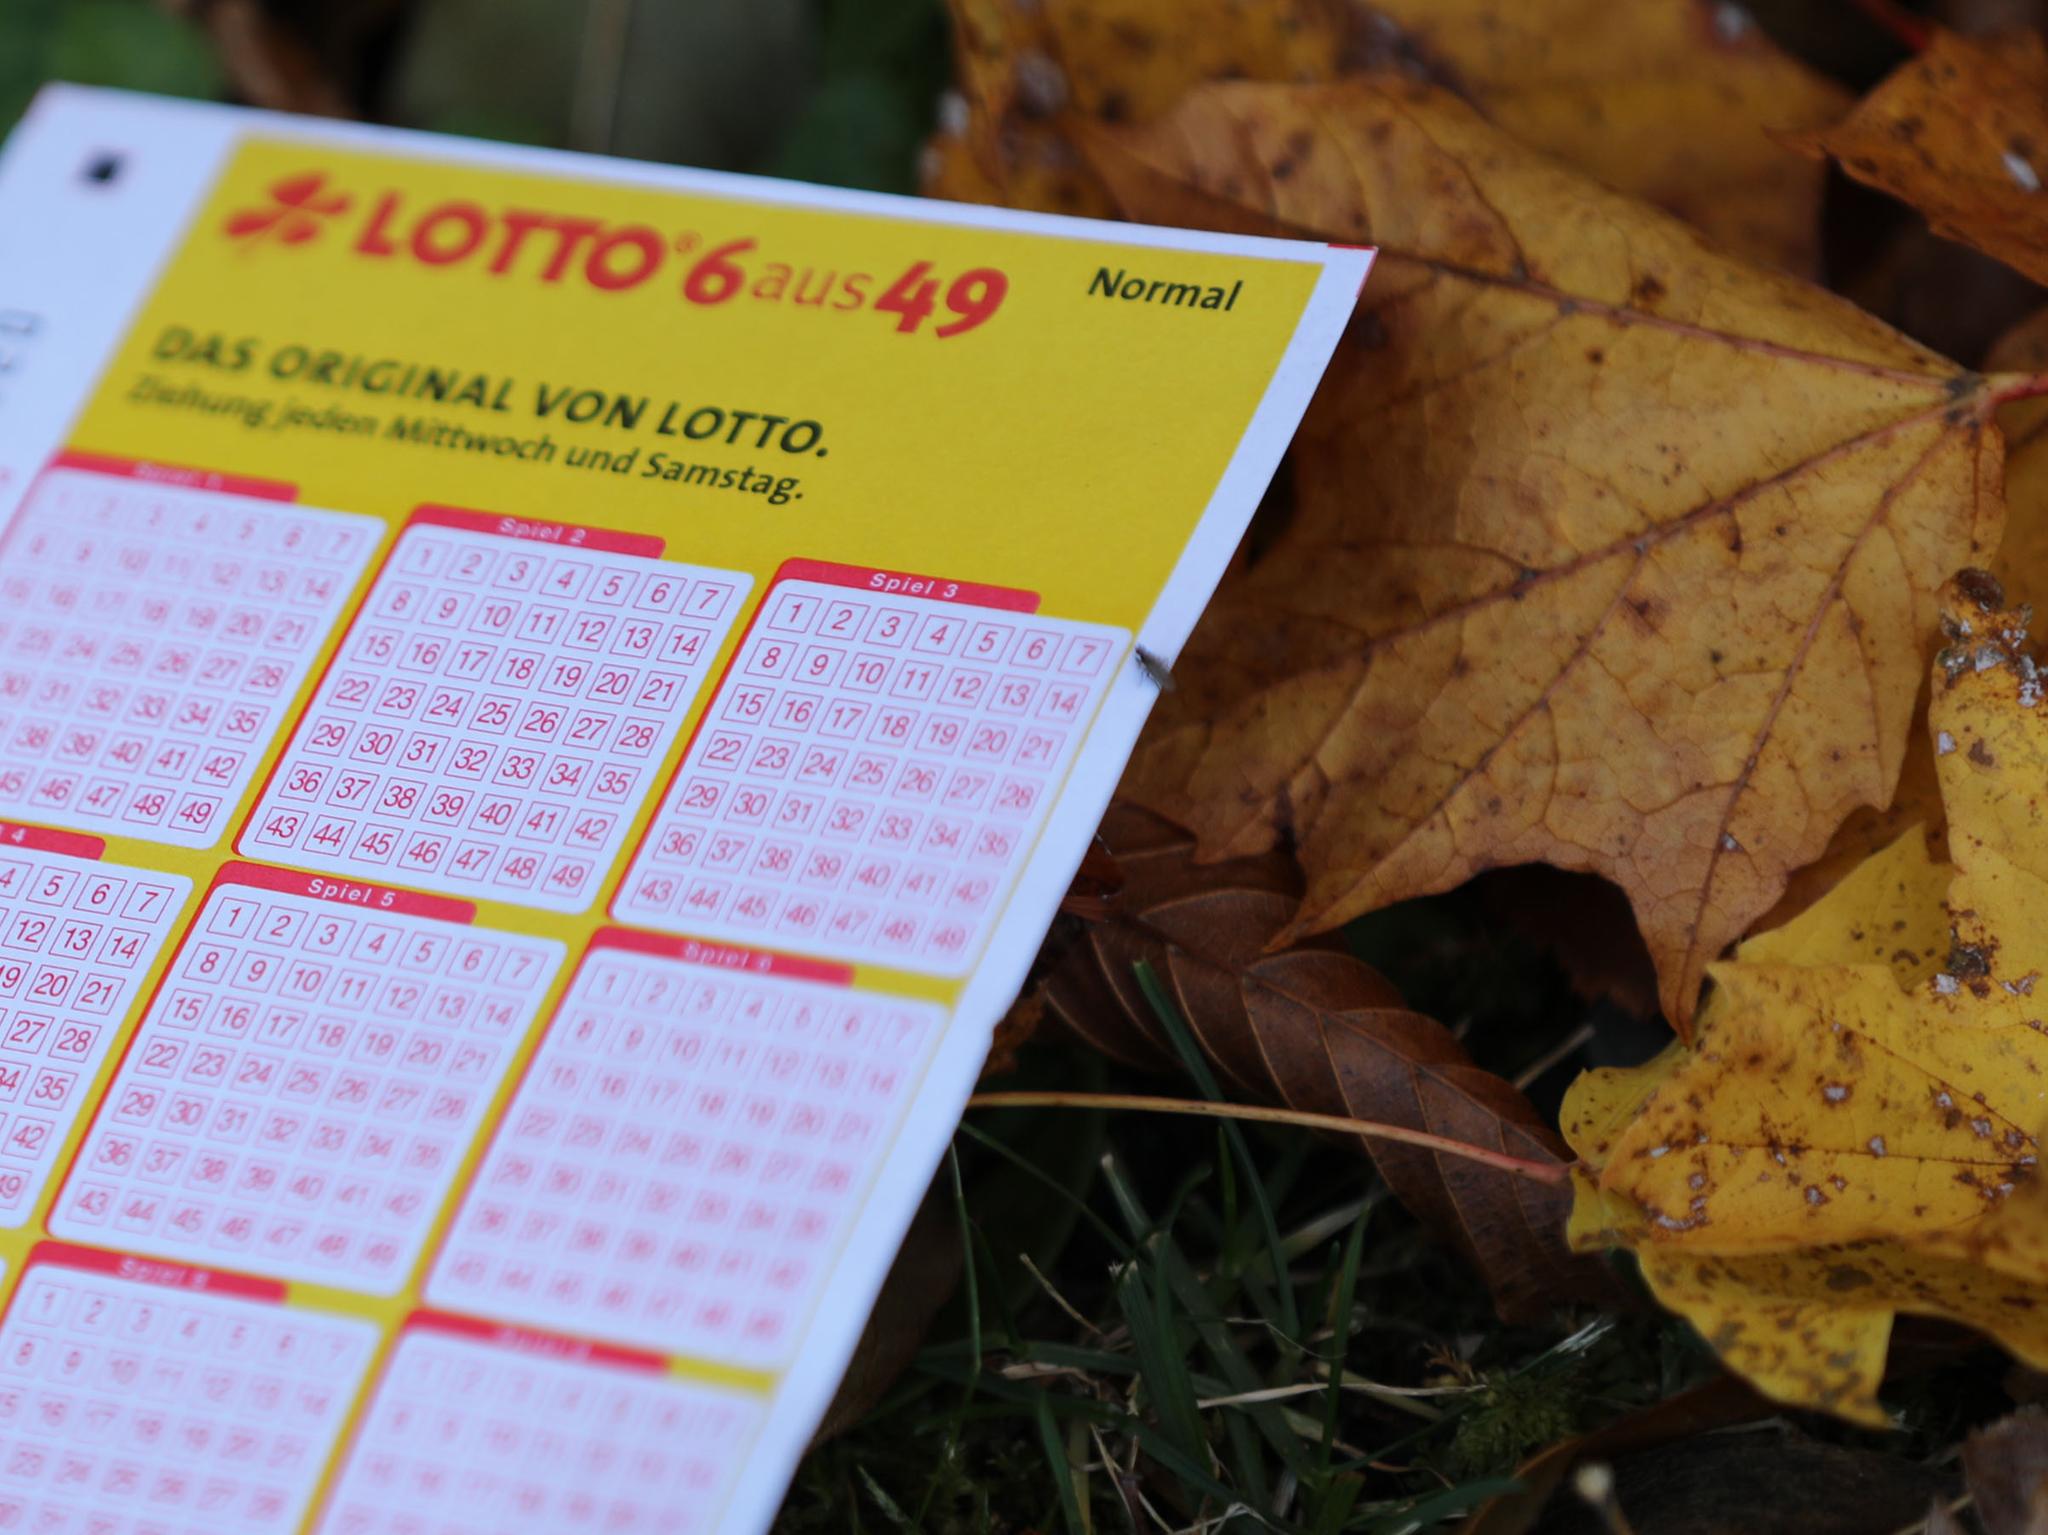 Führerschein im Lotto gewonnen? – Gelbe Schilder